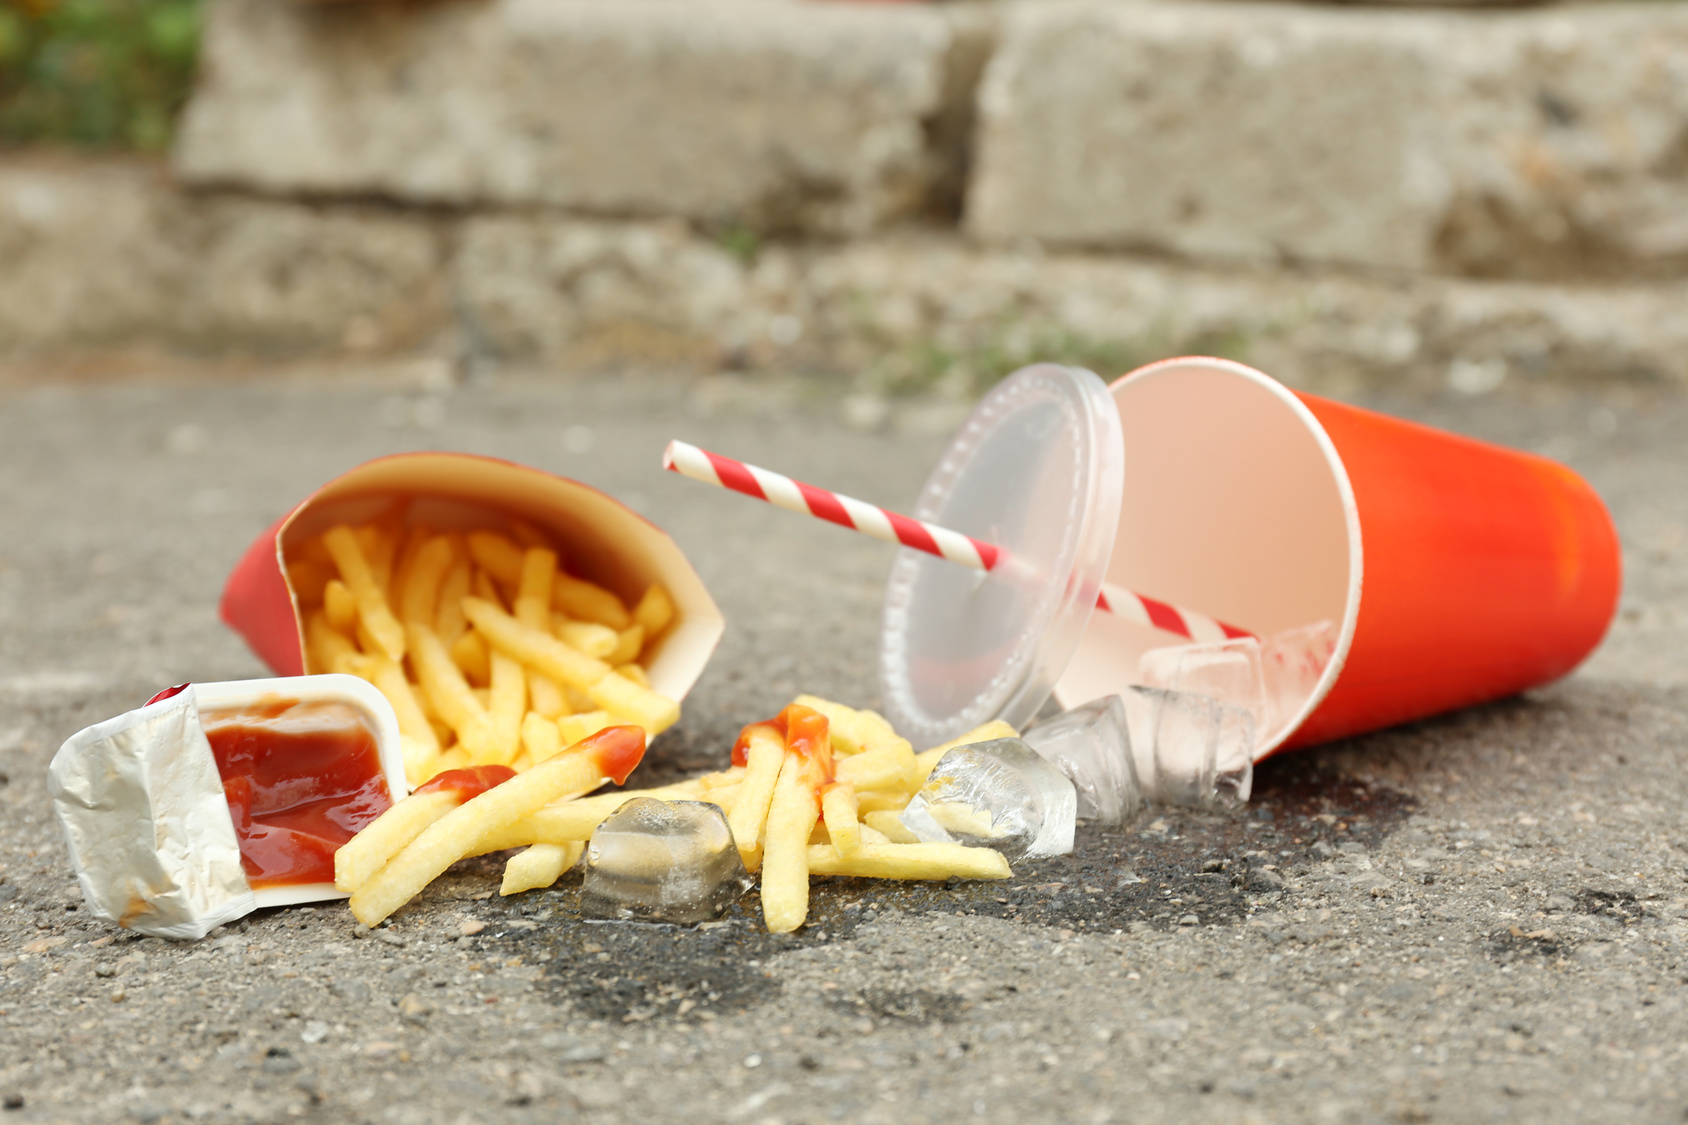 Patatine fritte, ketchup e bibita con ghiaccio di un fast food rovesciate a terra sull'asfalto; concept: junk food, linee guida nutrizionali